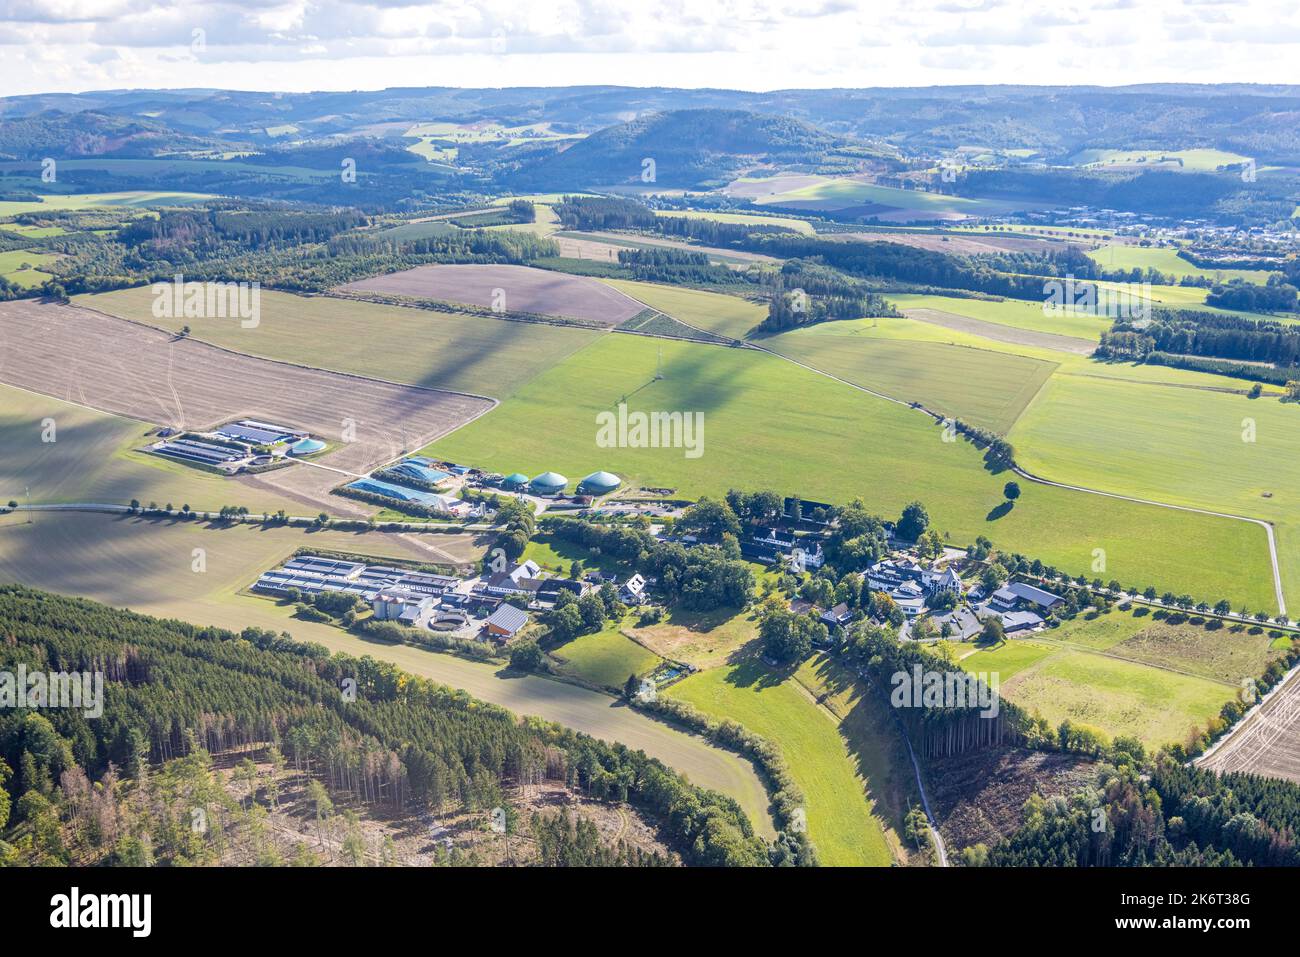 , Veduta aerea, albergo familiare Ebbinghof, fattoria Muth-Köhne, fattoria Peitz, Biogas pianta, fattorie, prati e campi, cielo blu con nuvole, vista distante, Wormb Foto Stock